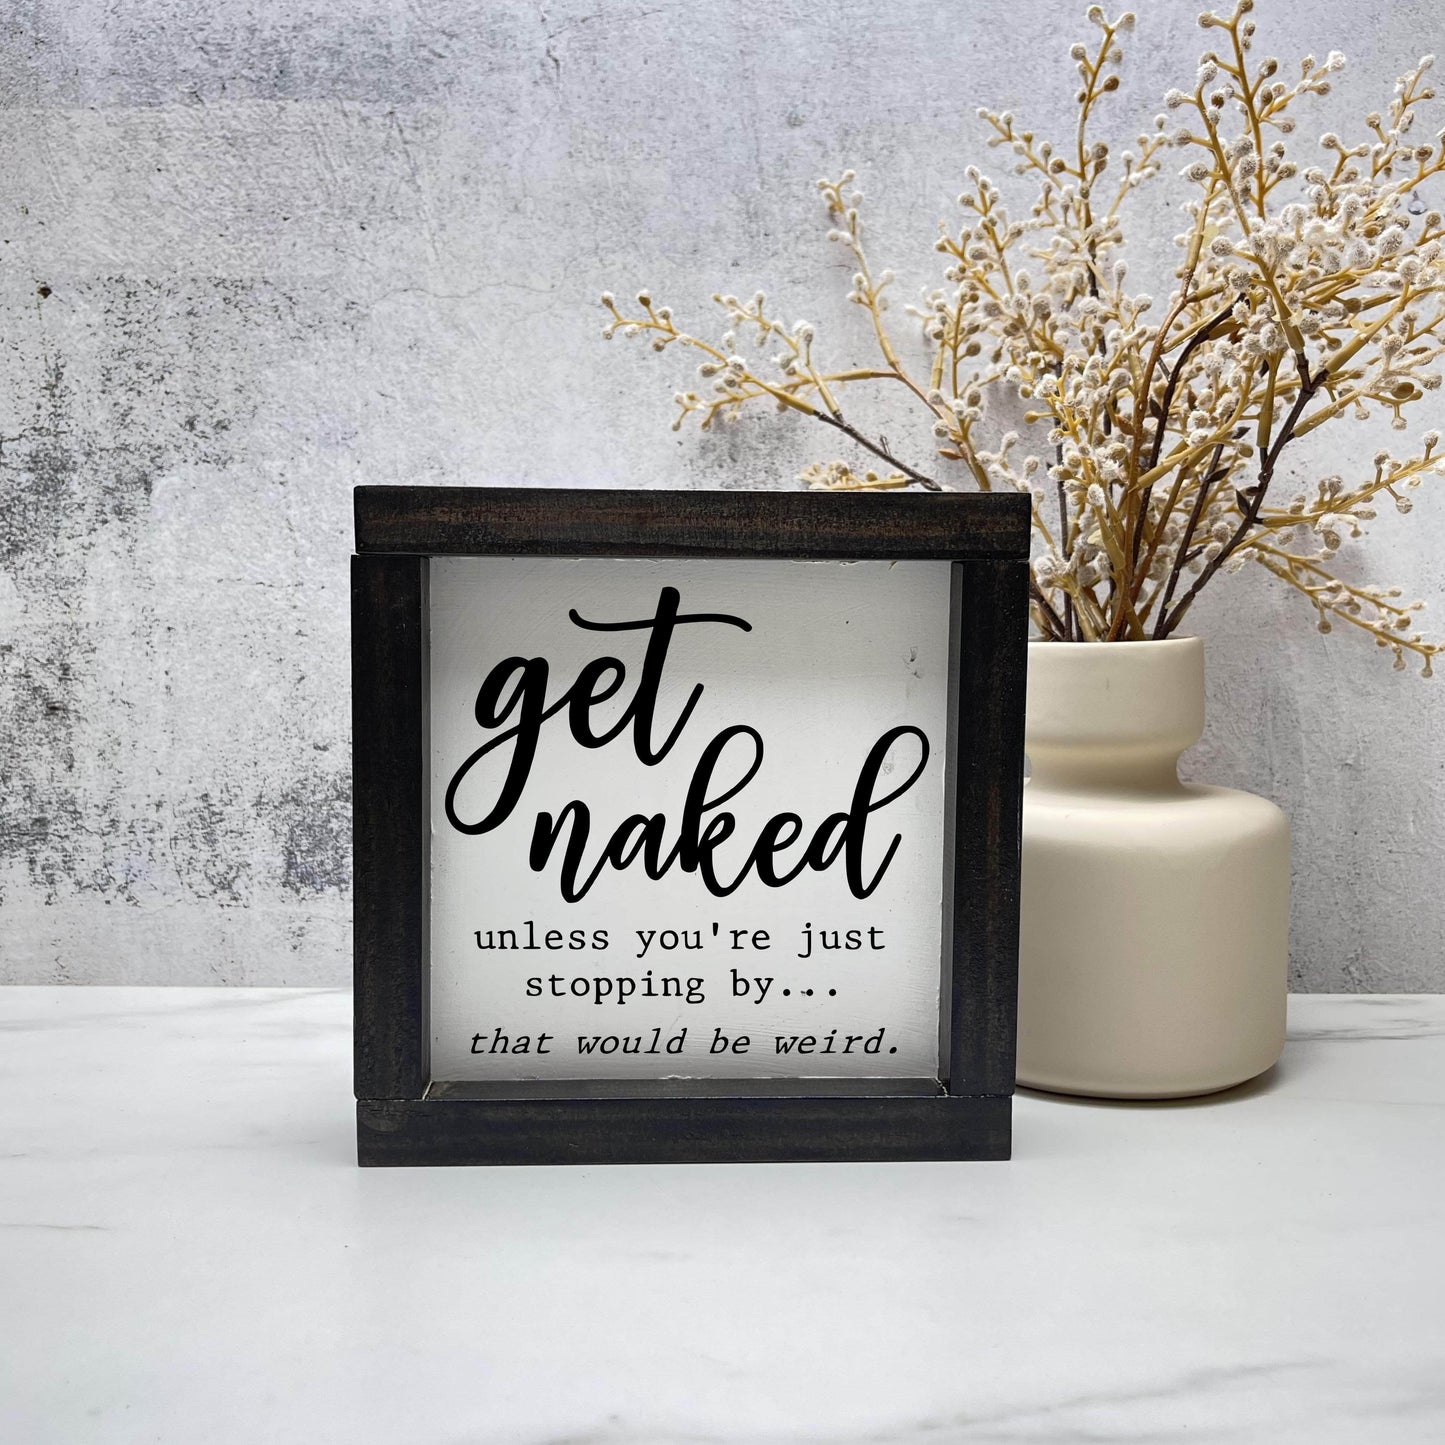 Get naked unless you're visiting, framed bathroom wood sign, bathroom decor, home decor